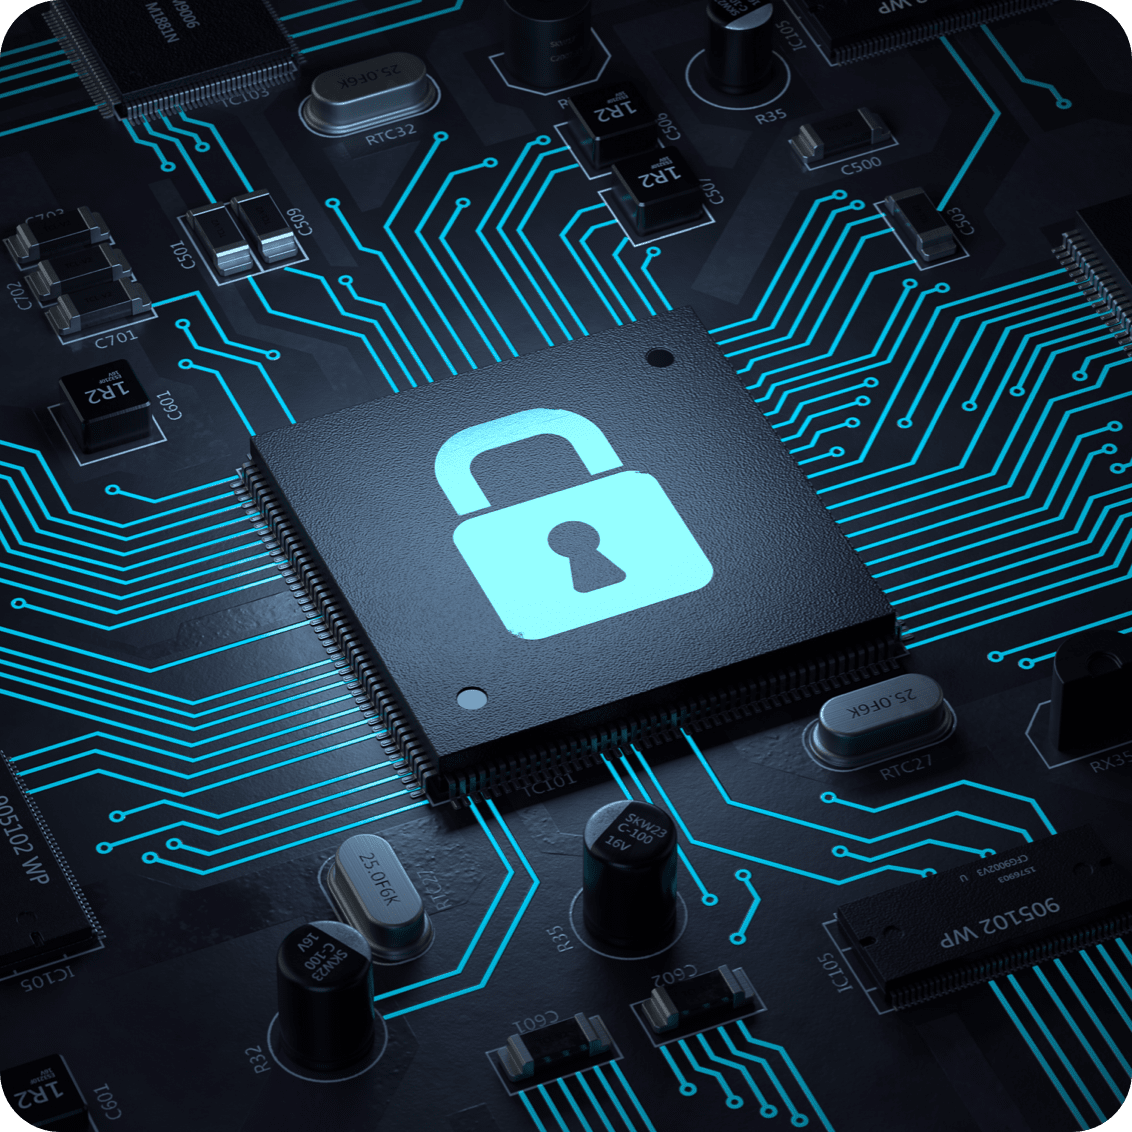 メモリボード上でロックアイコンが具現化し、サムスン電子メモリが搭載されたIoT製品のセキュリティを強調しているイラストイメージ。